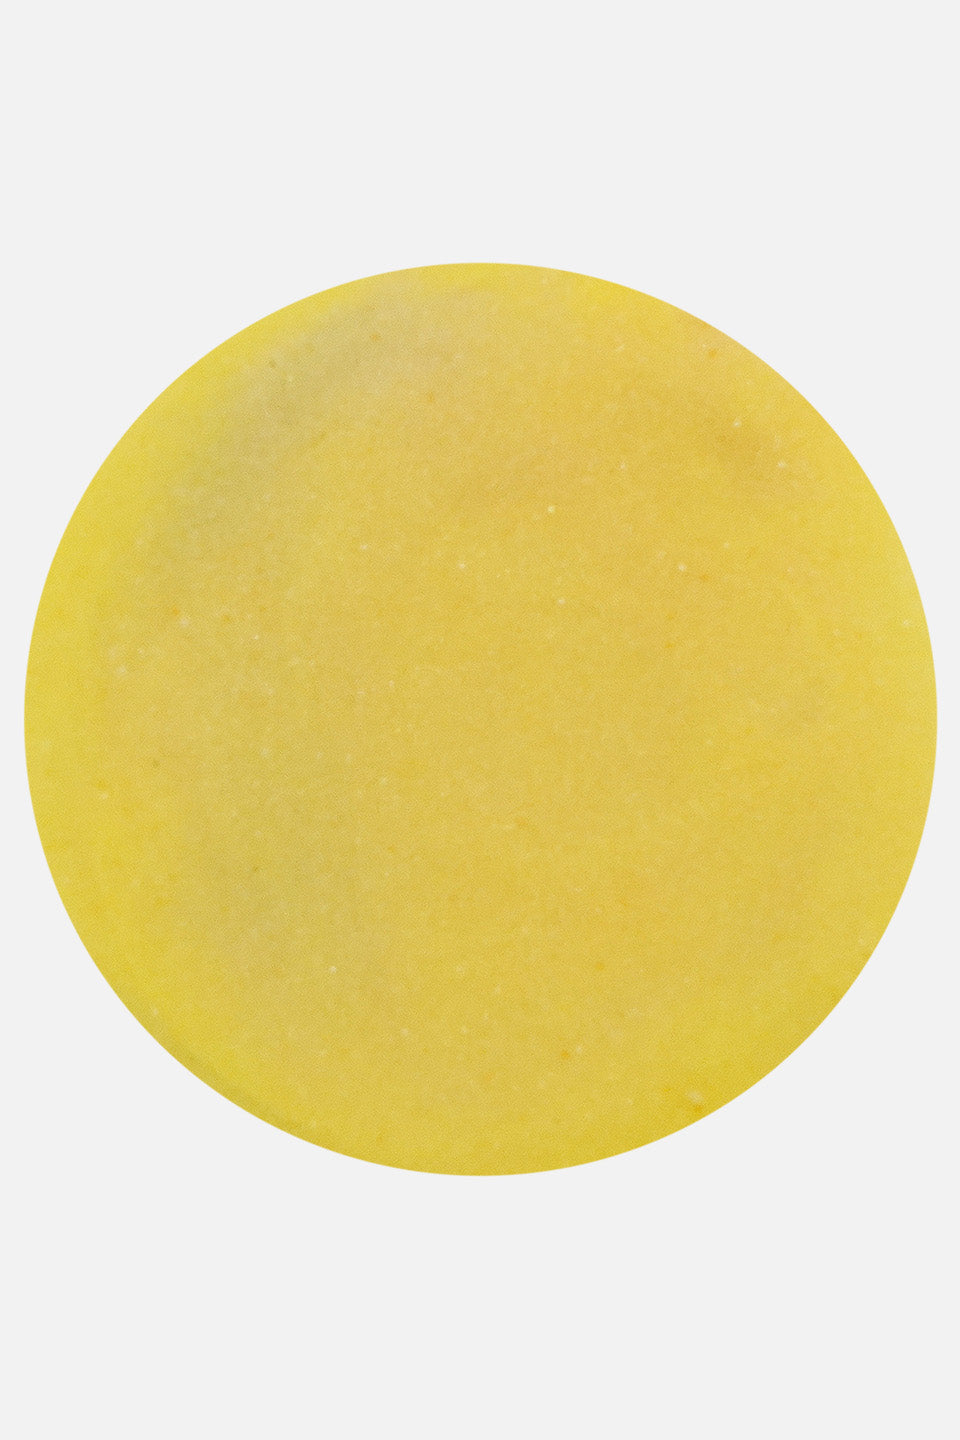 Polvo acrílico amarillo limón 5 g